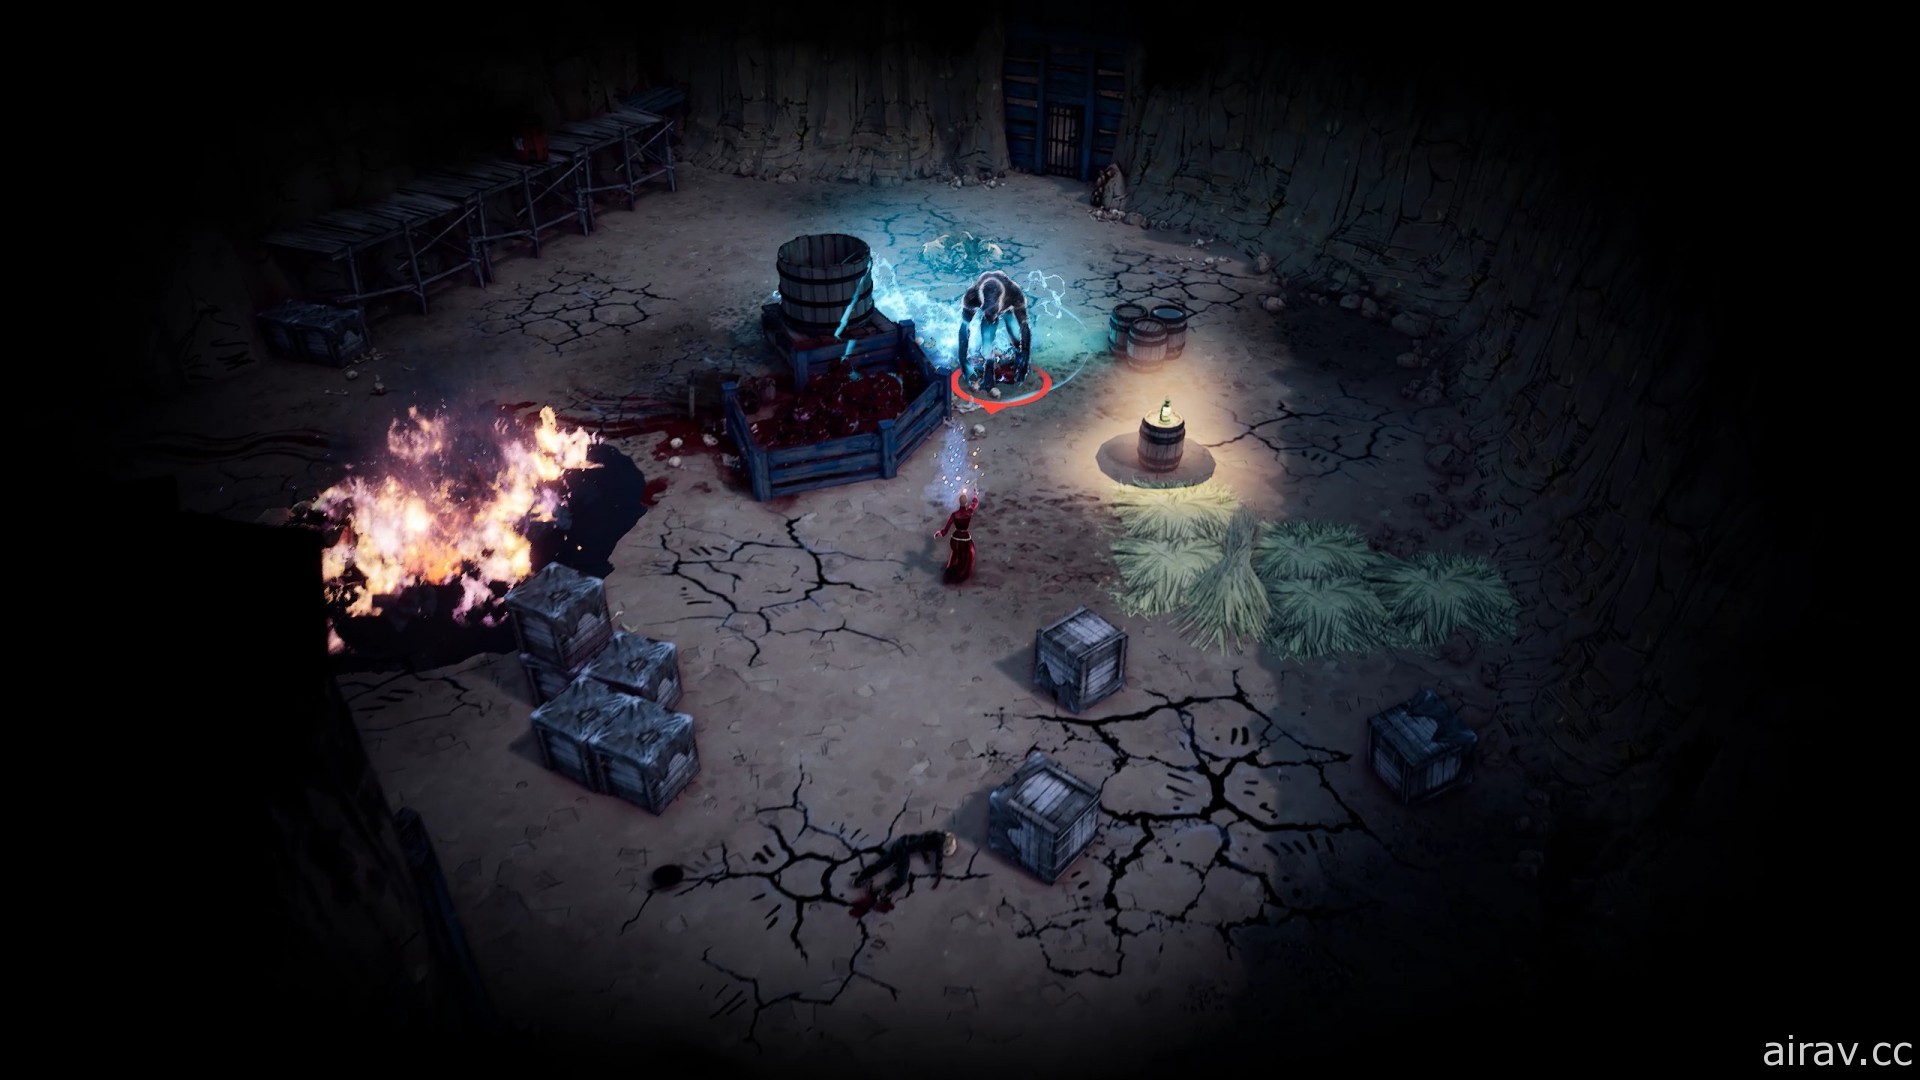 《詭野西部》揭露遊戲特色介紹資訊 結合西部題材與黑暗奇幻風格